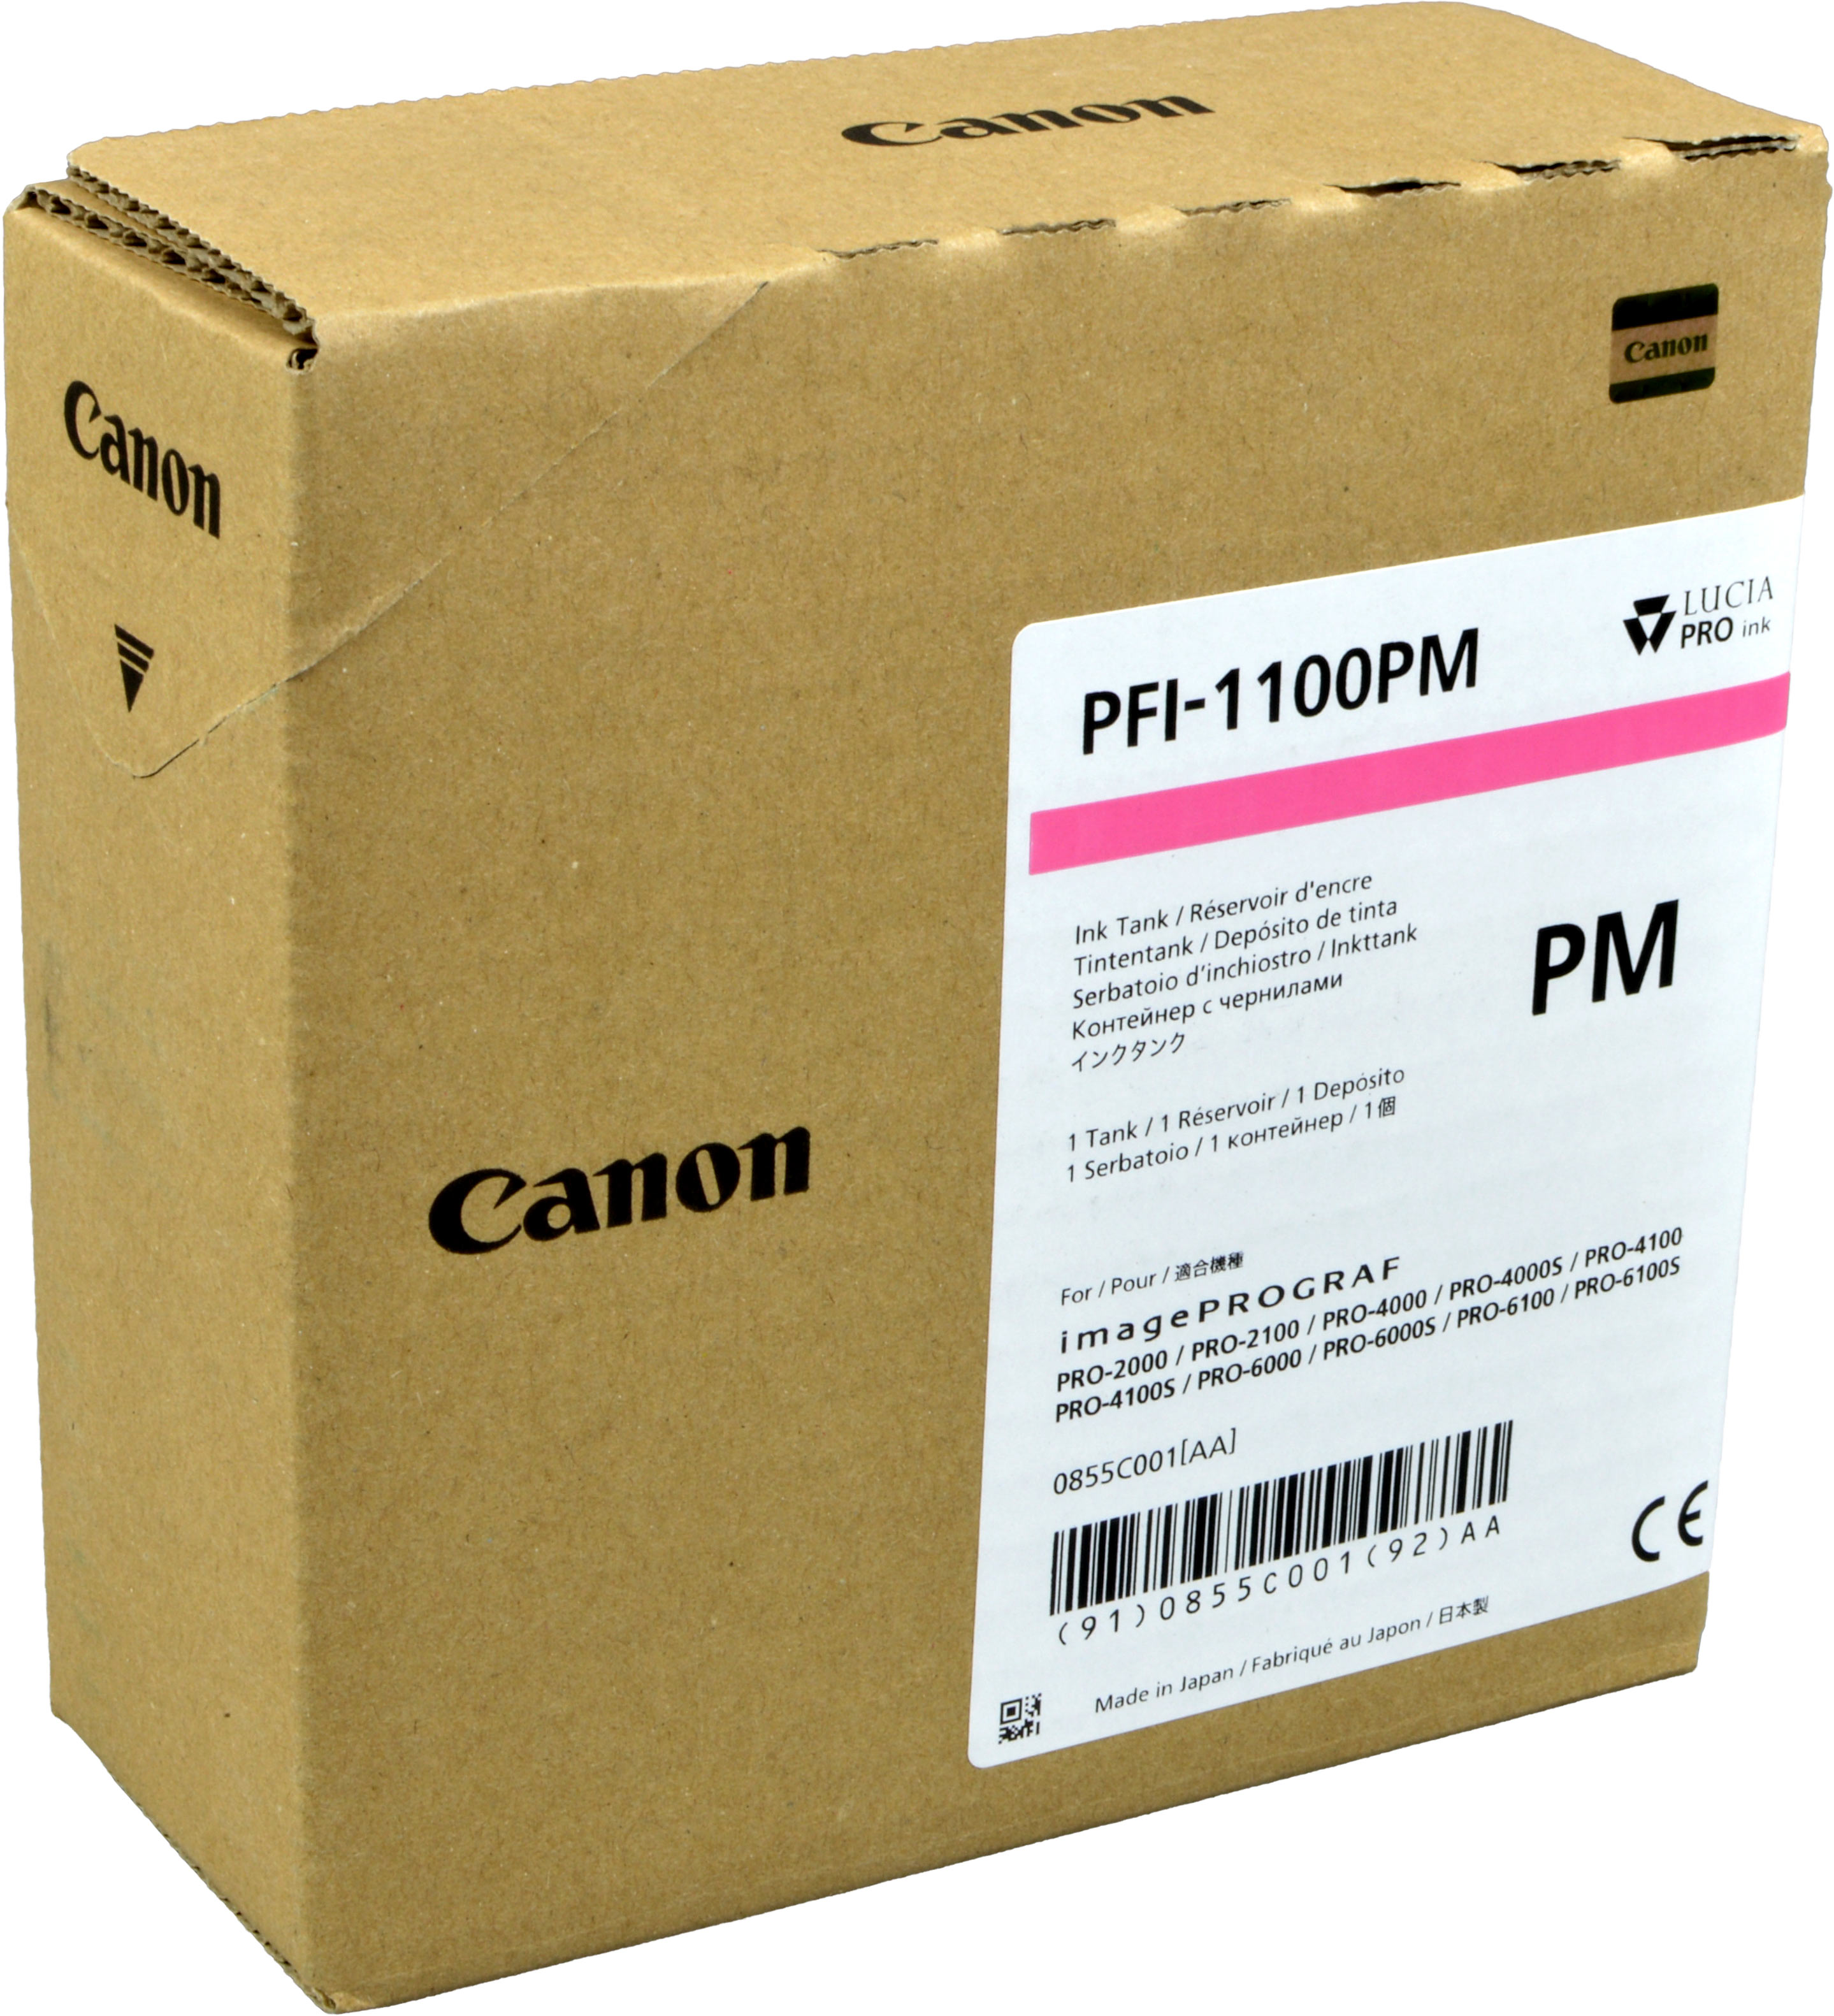 Canon Tinte 0855C001  PFI-1100PM  photo magenta